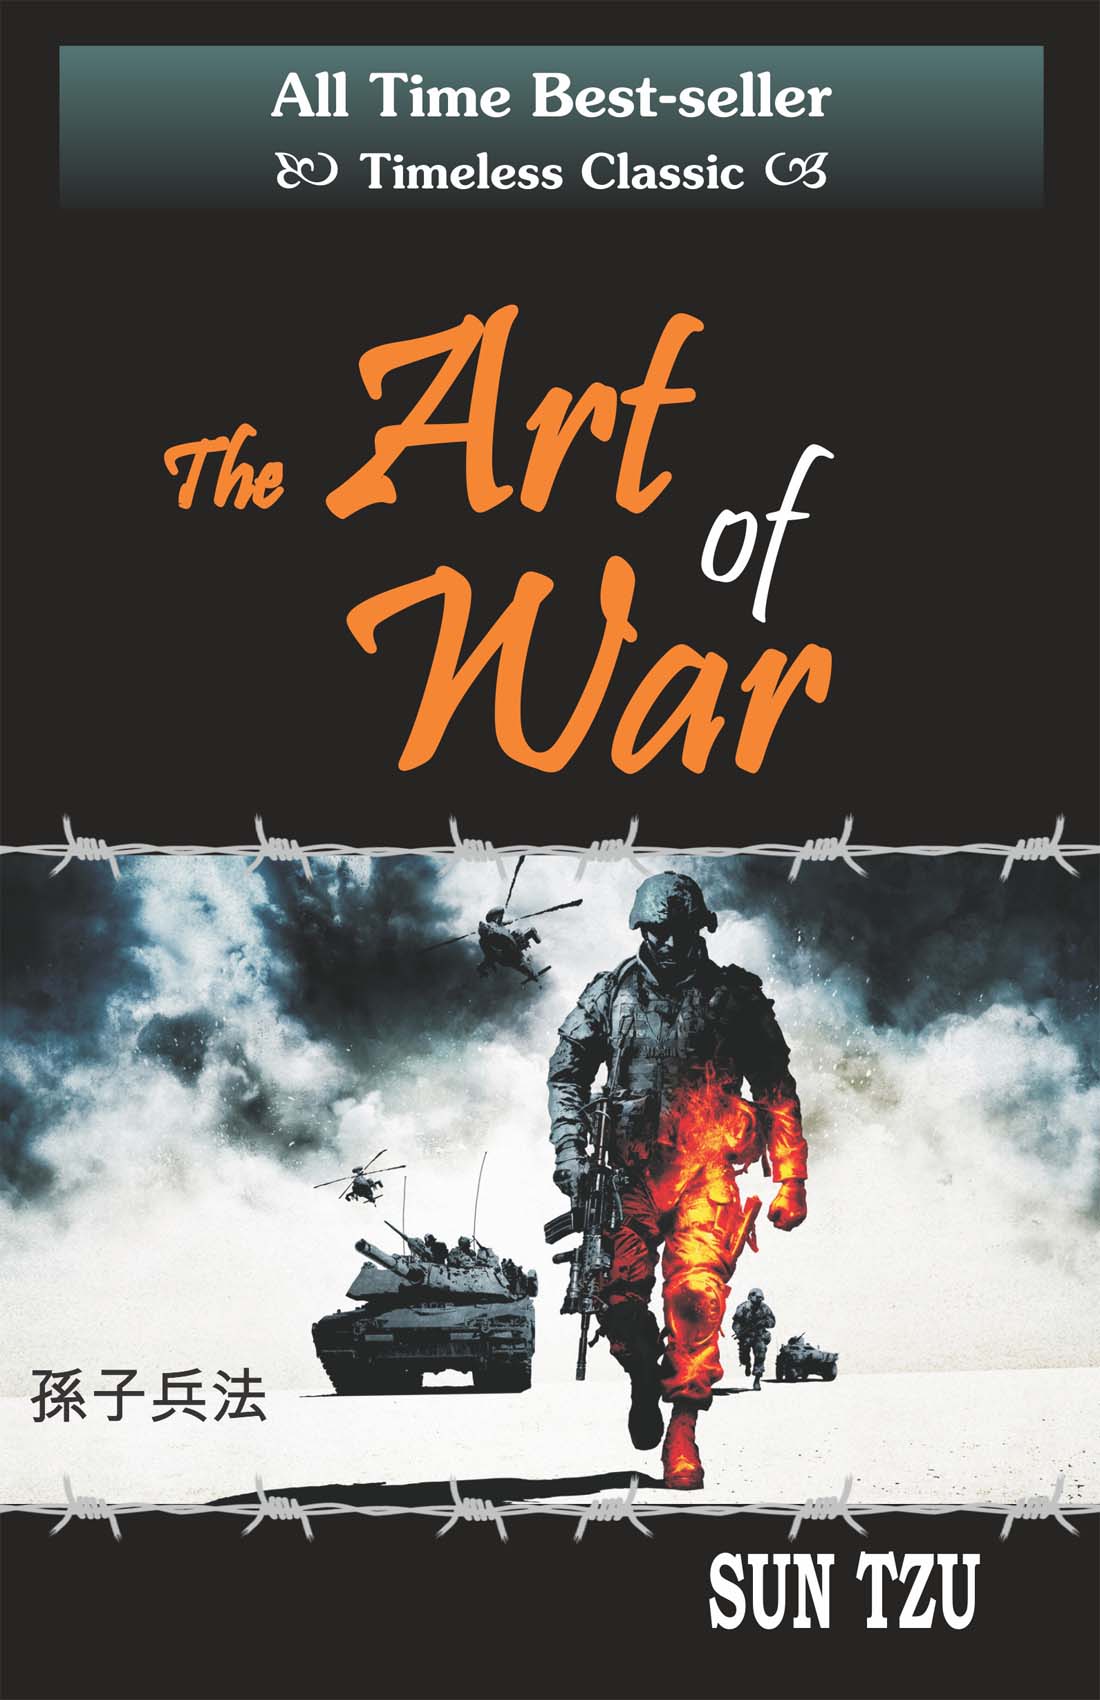 Art of War Books